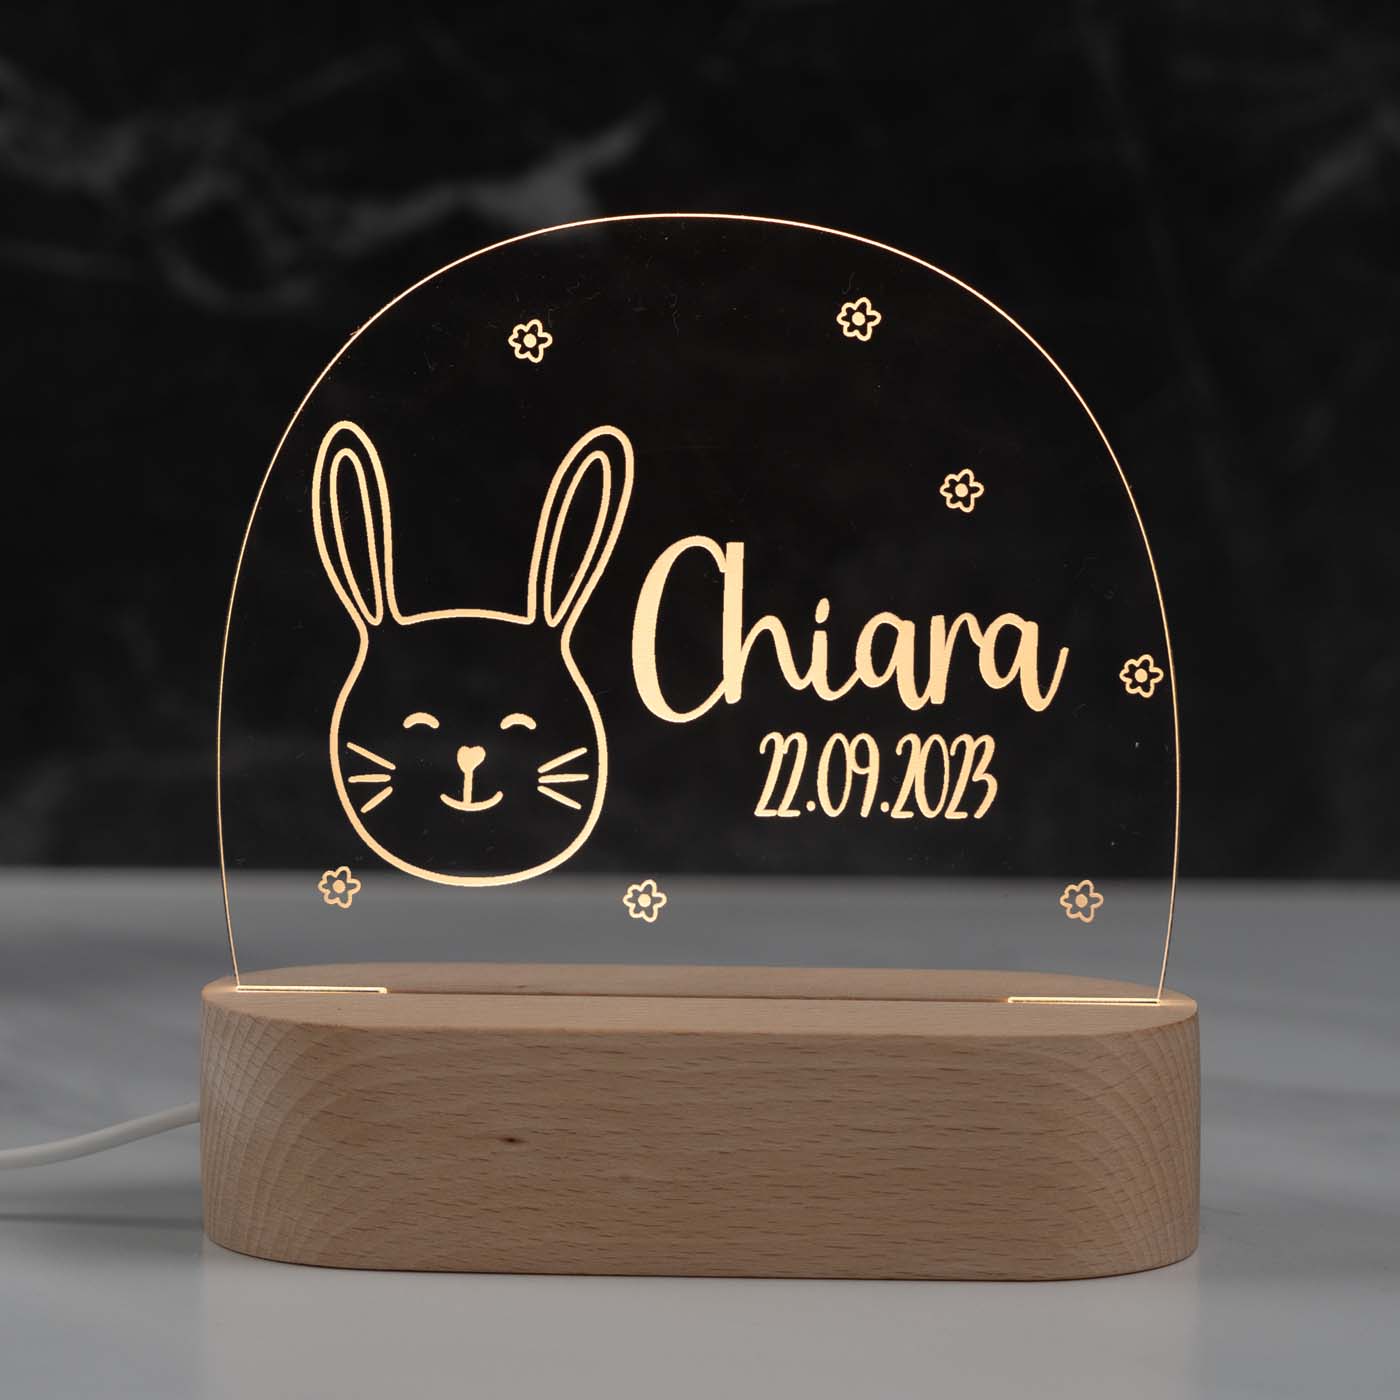 Personalisierte Nachtlampe für Kinder - Happy Hase - Name und Geburtsdatum